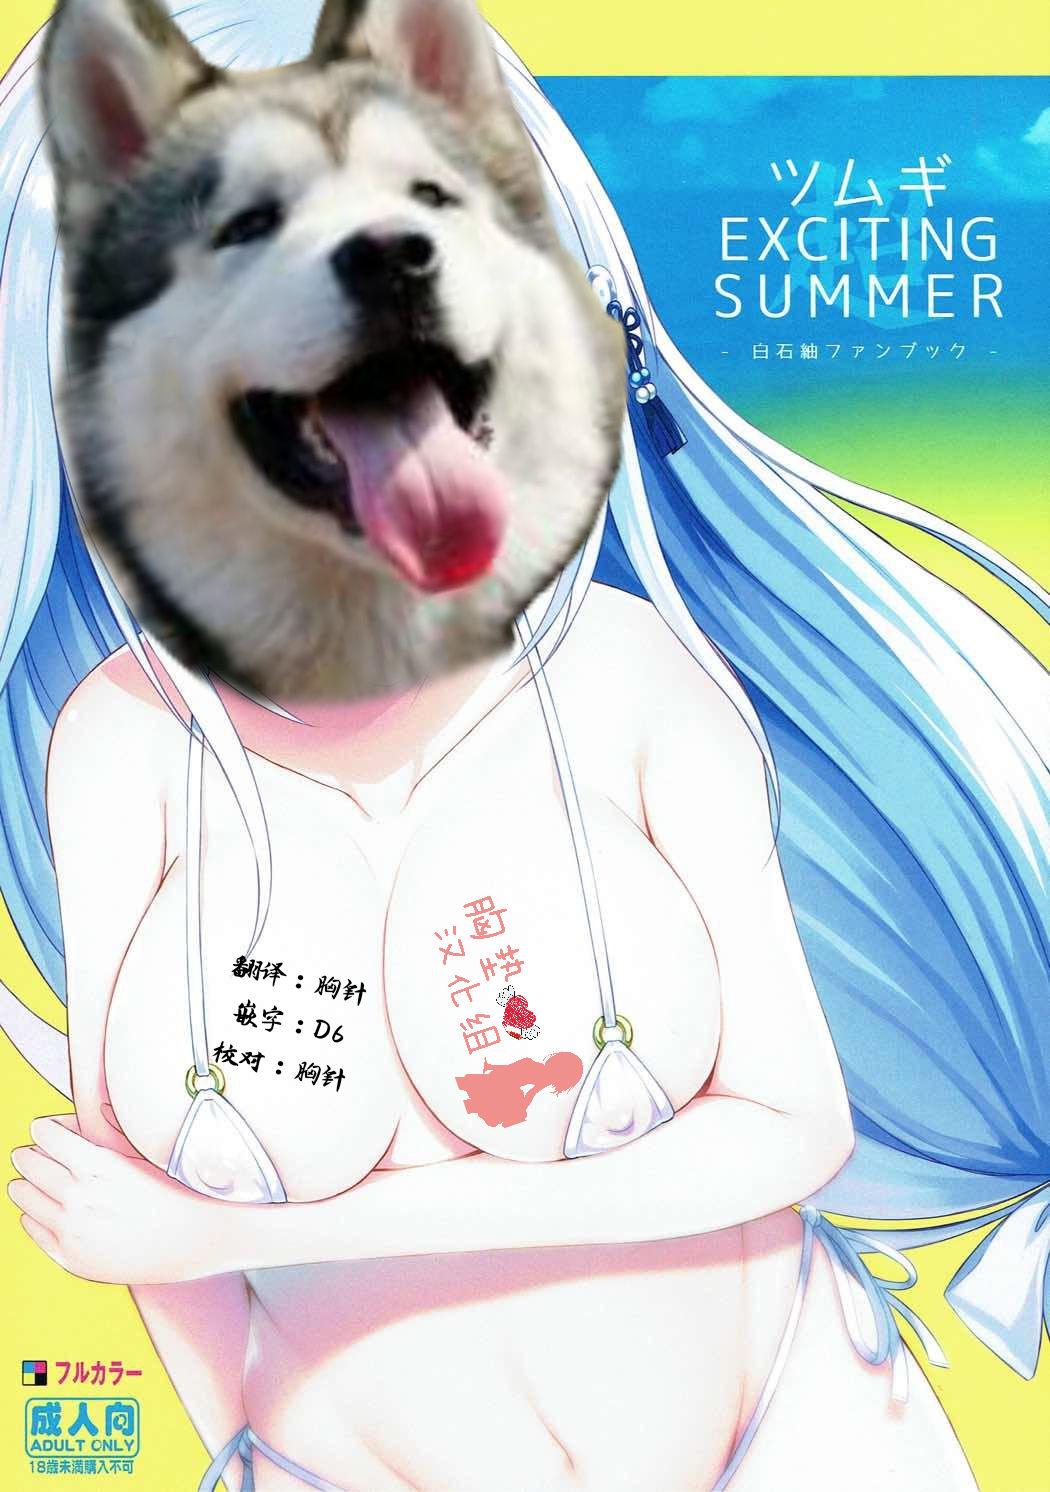 Tsumugi EXCITING SUMMER 1